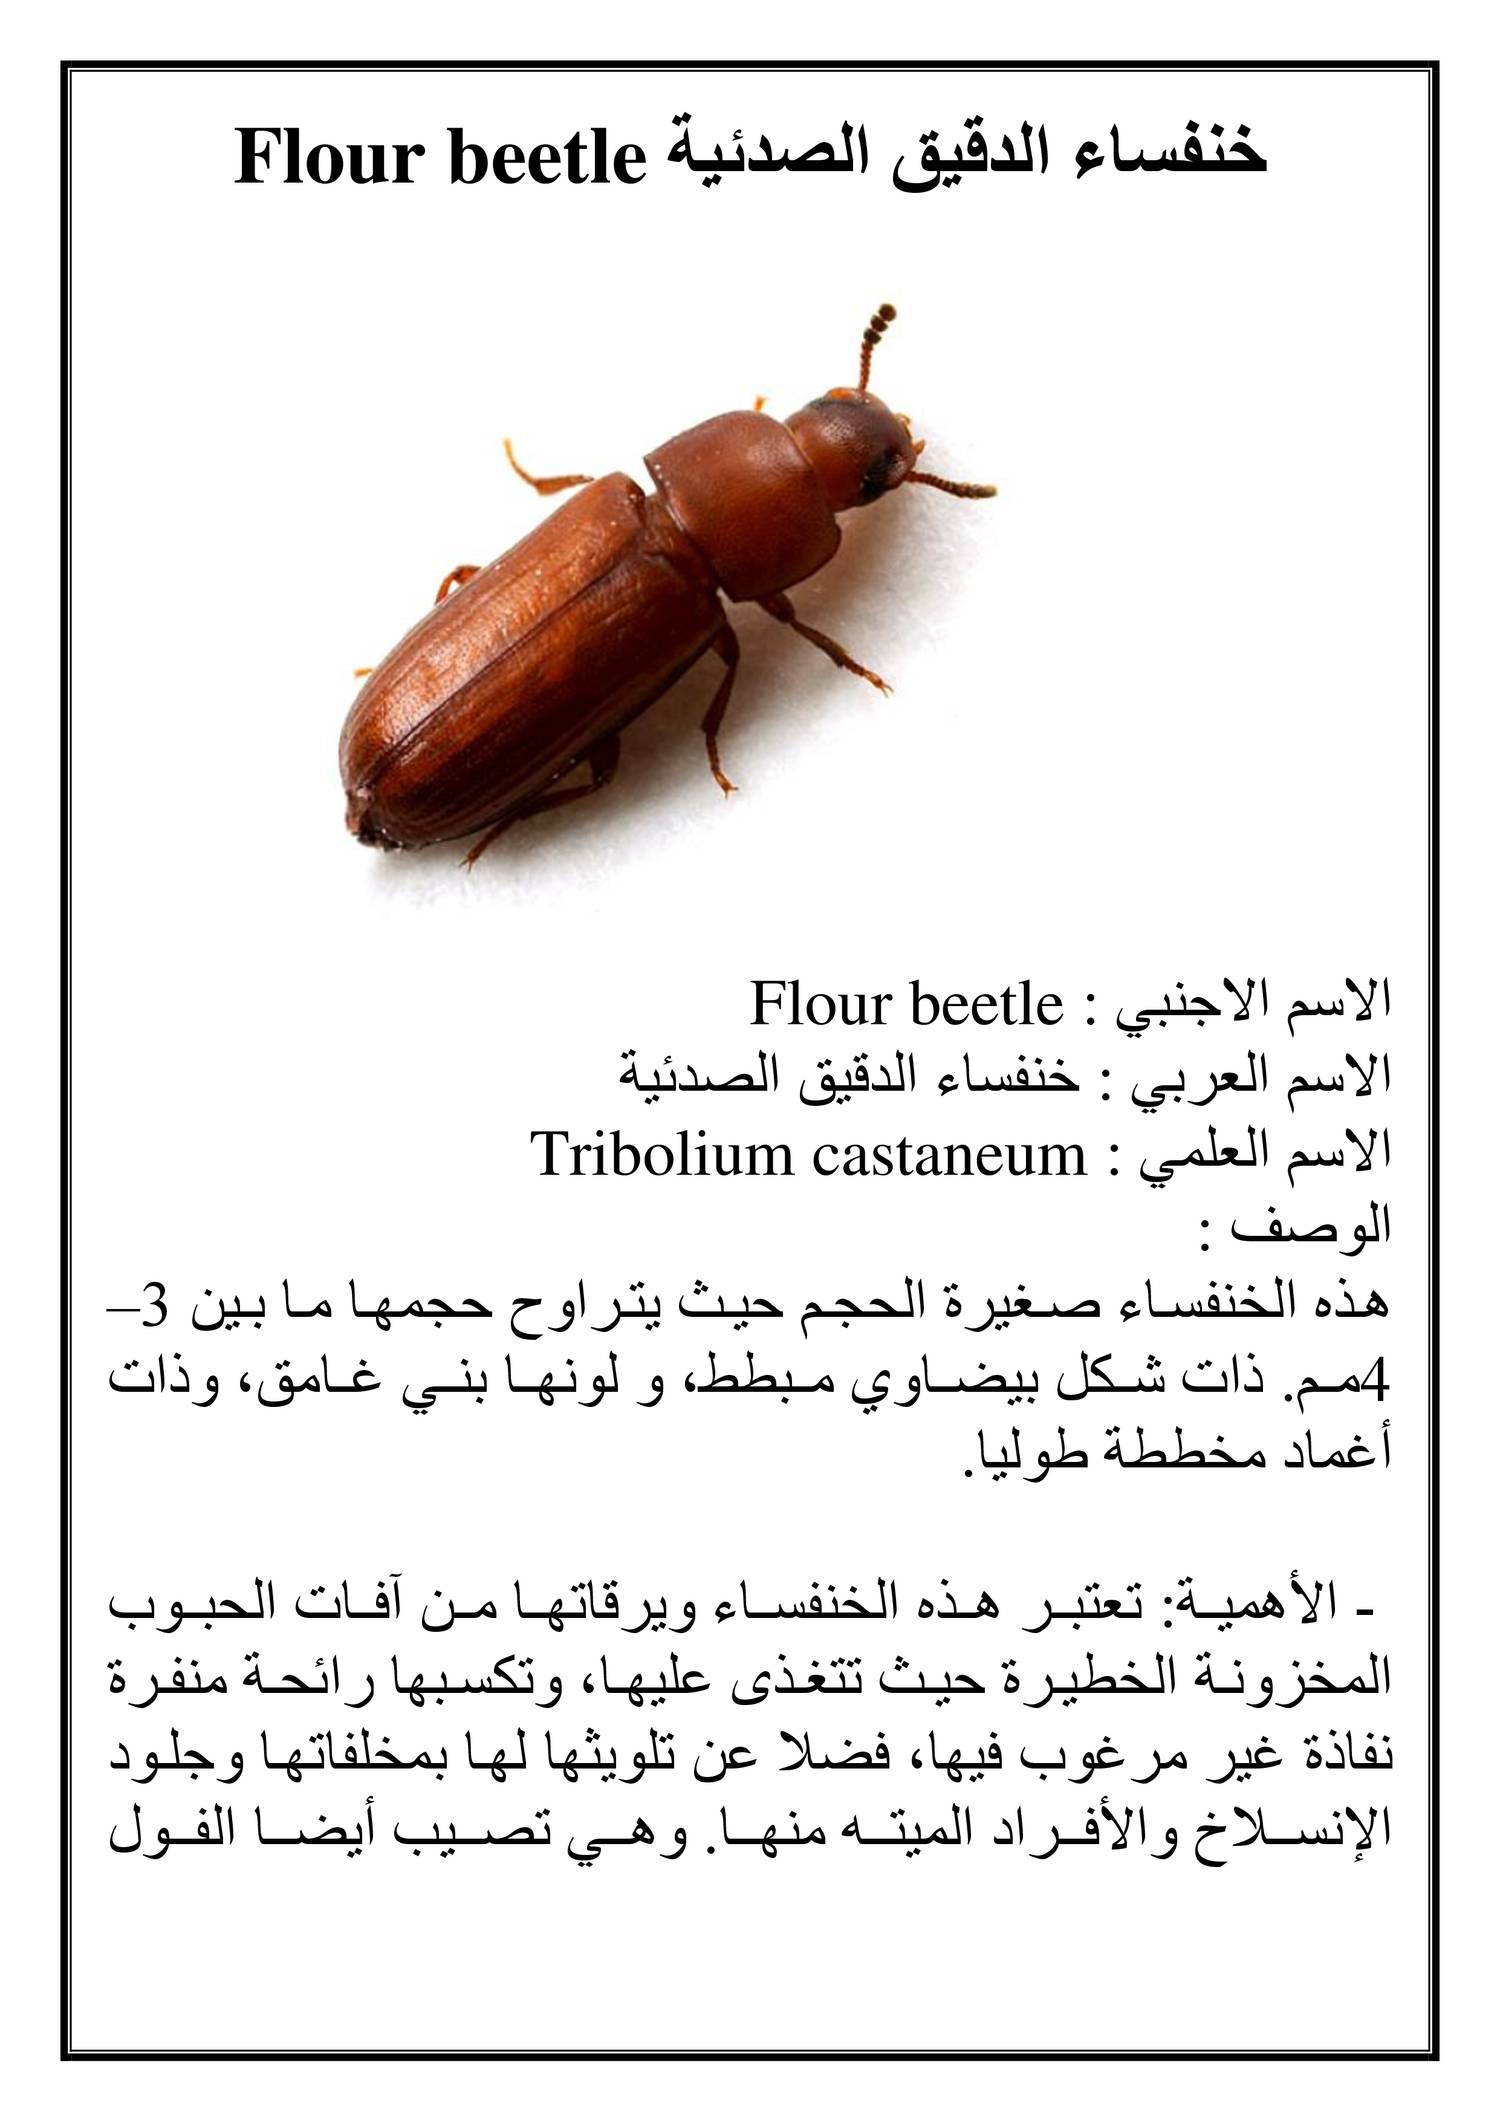 خنفساء الدقيق الصدئية Flour beetle.doc | DocDroid